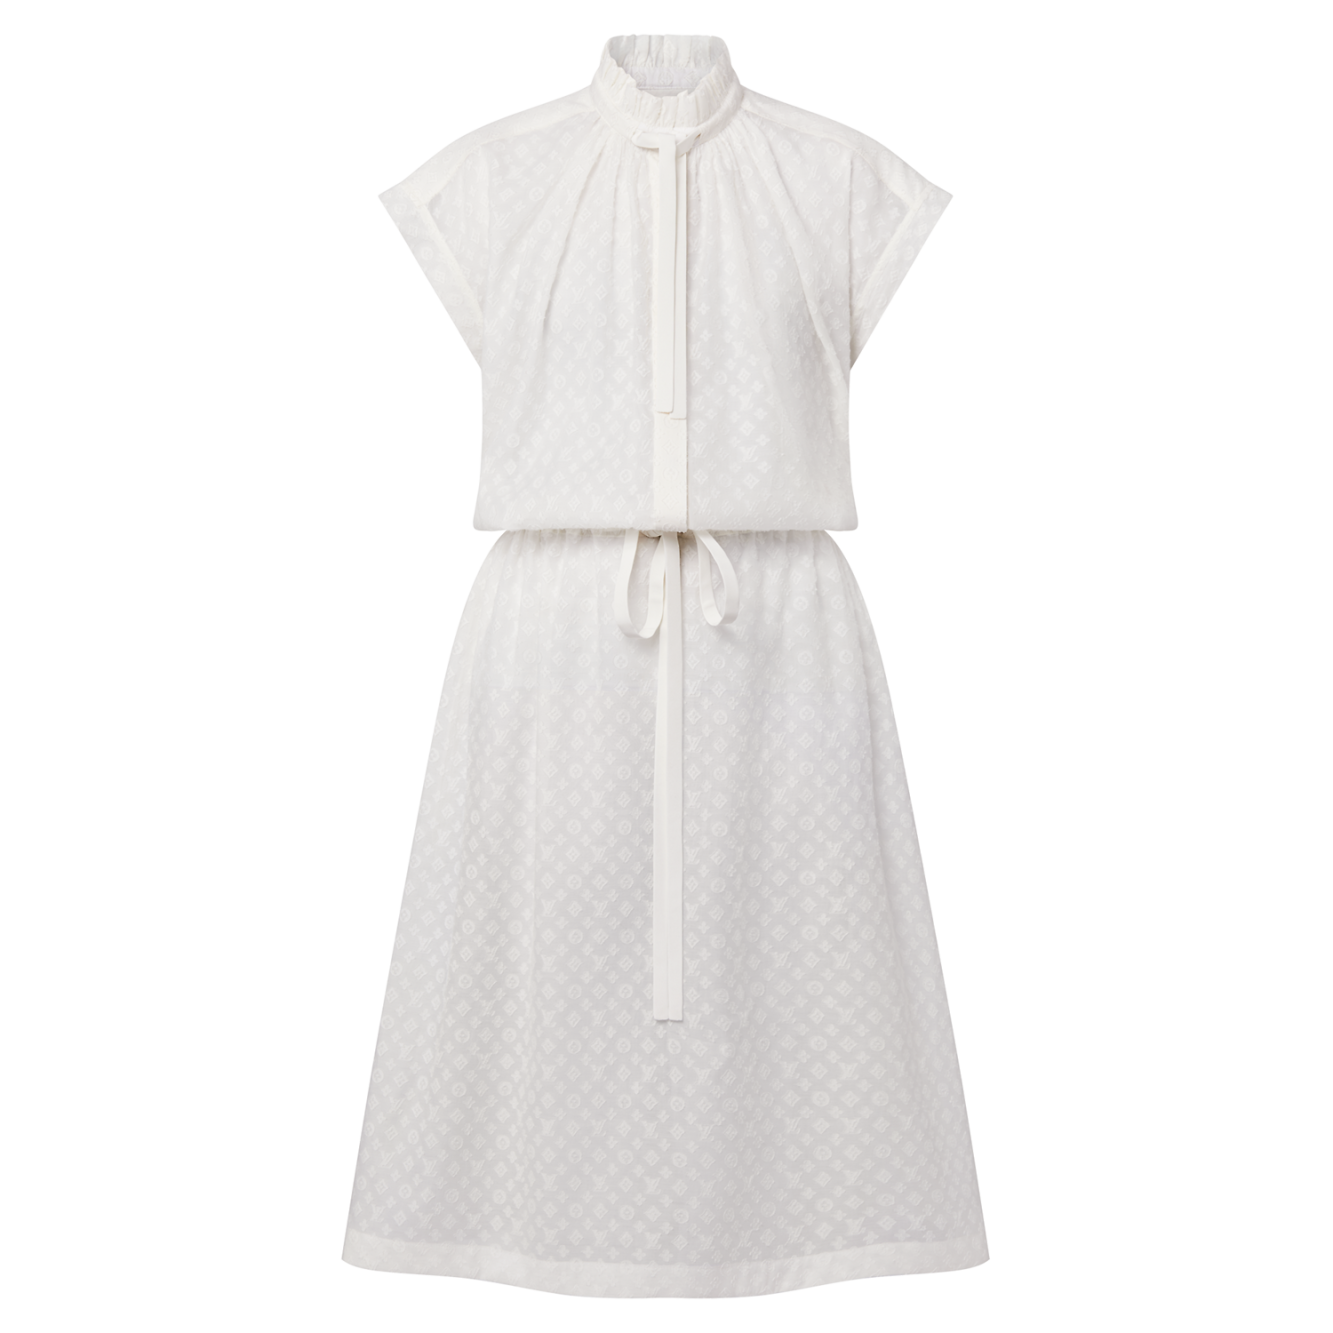 Louis Vuitton Monogram Fil Coupé Lavaliere Collar Dress - Vitkac shop online